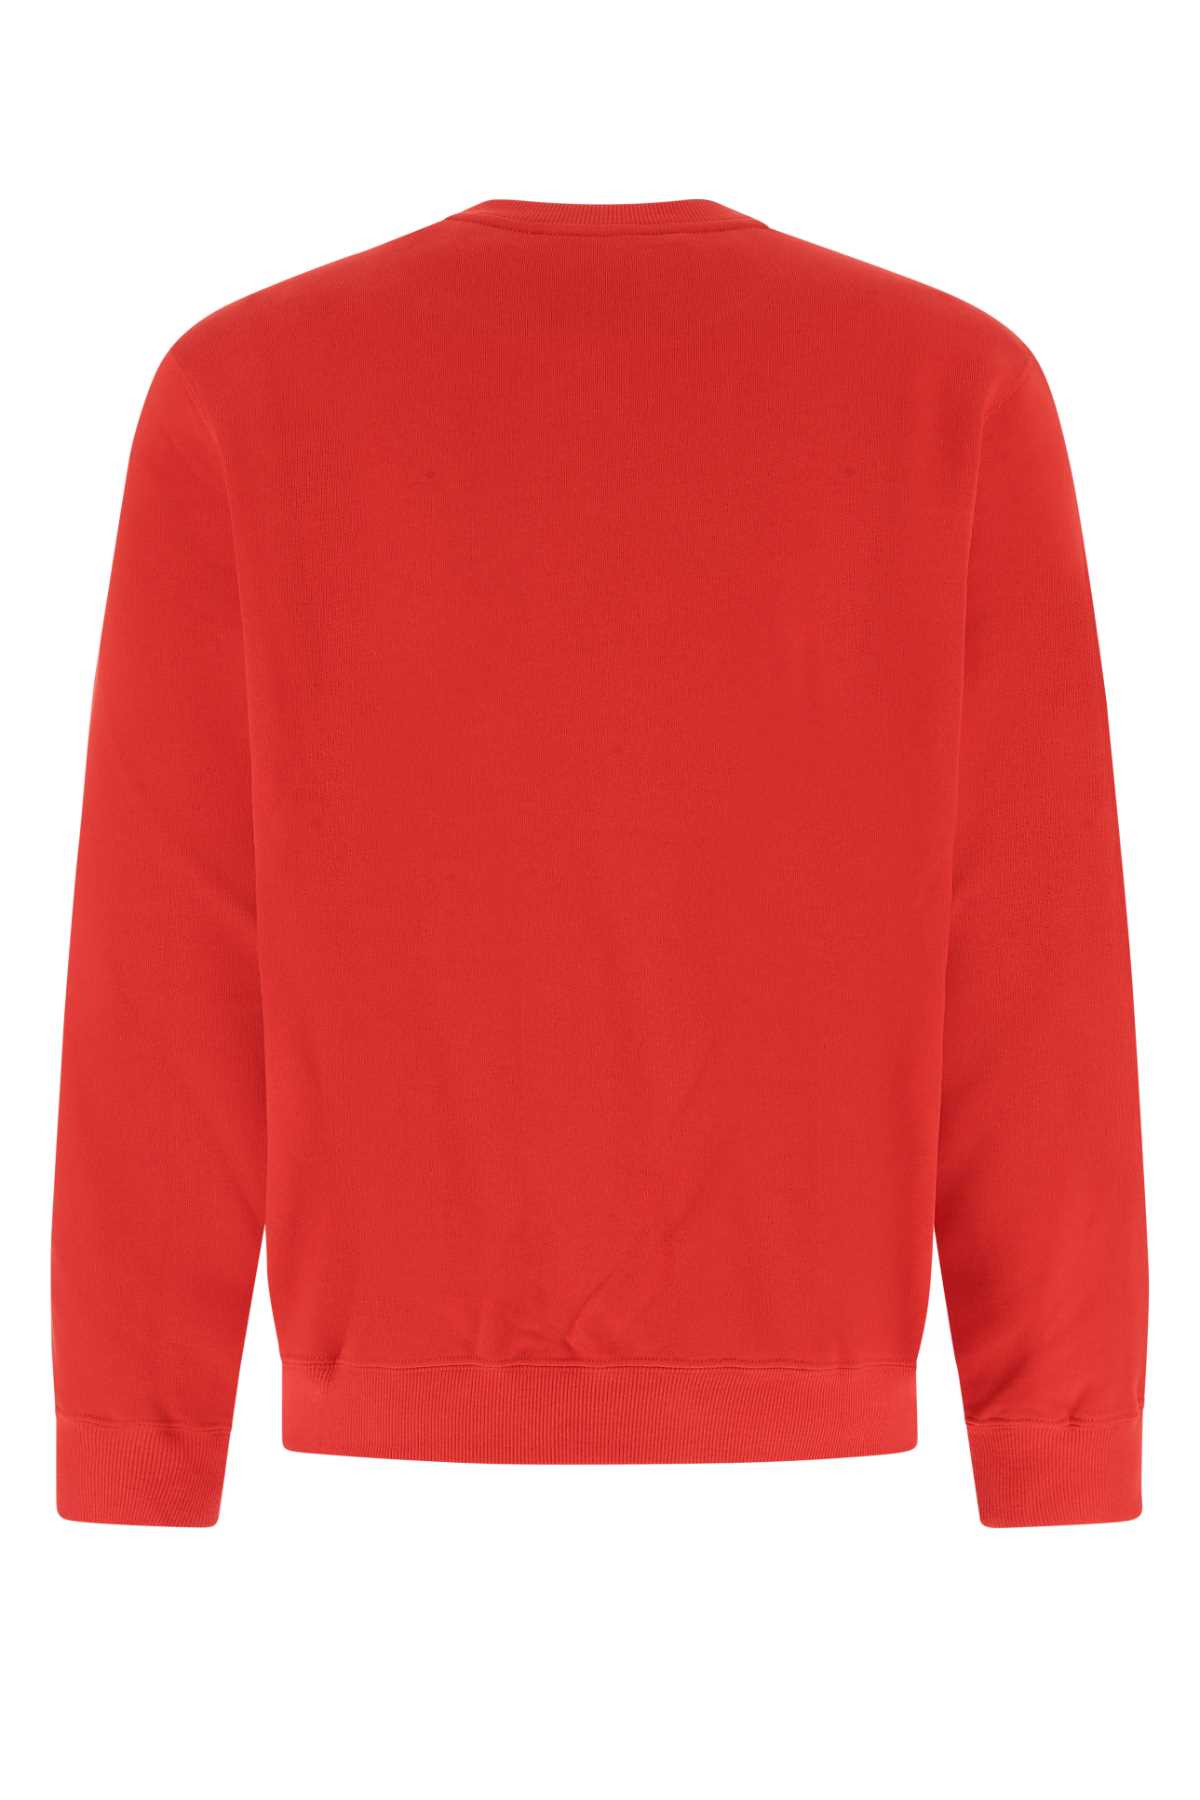 Koché Red Cotton Sweatshirt In 314